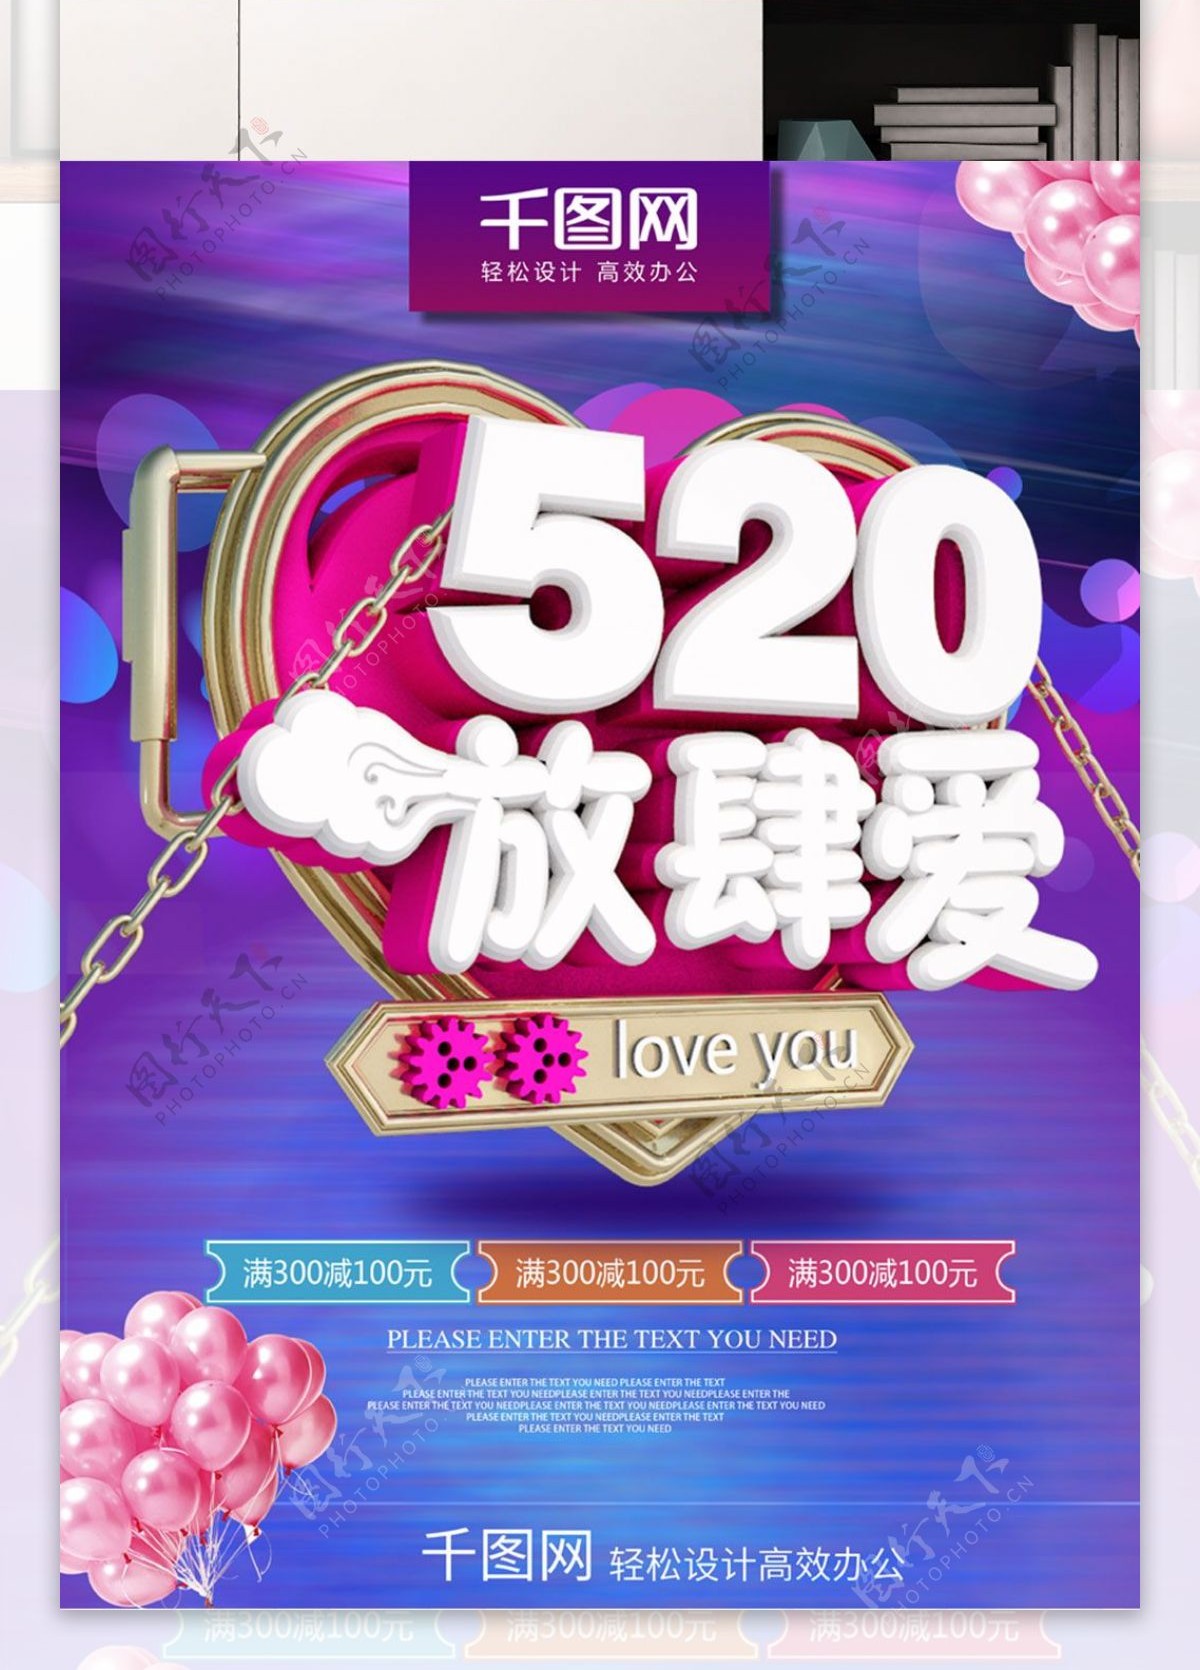 520浪漫系海报促销设计